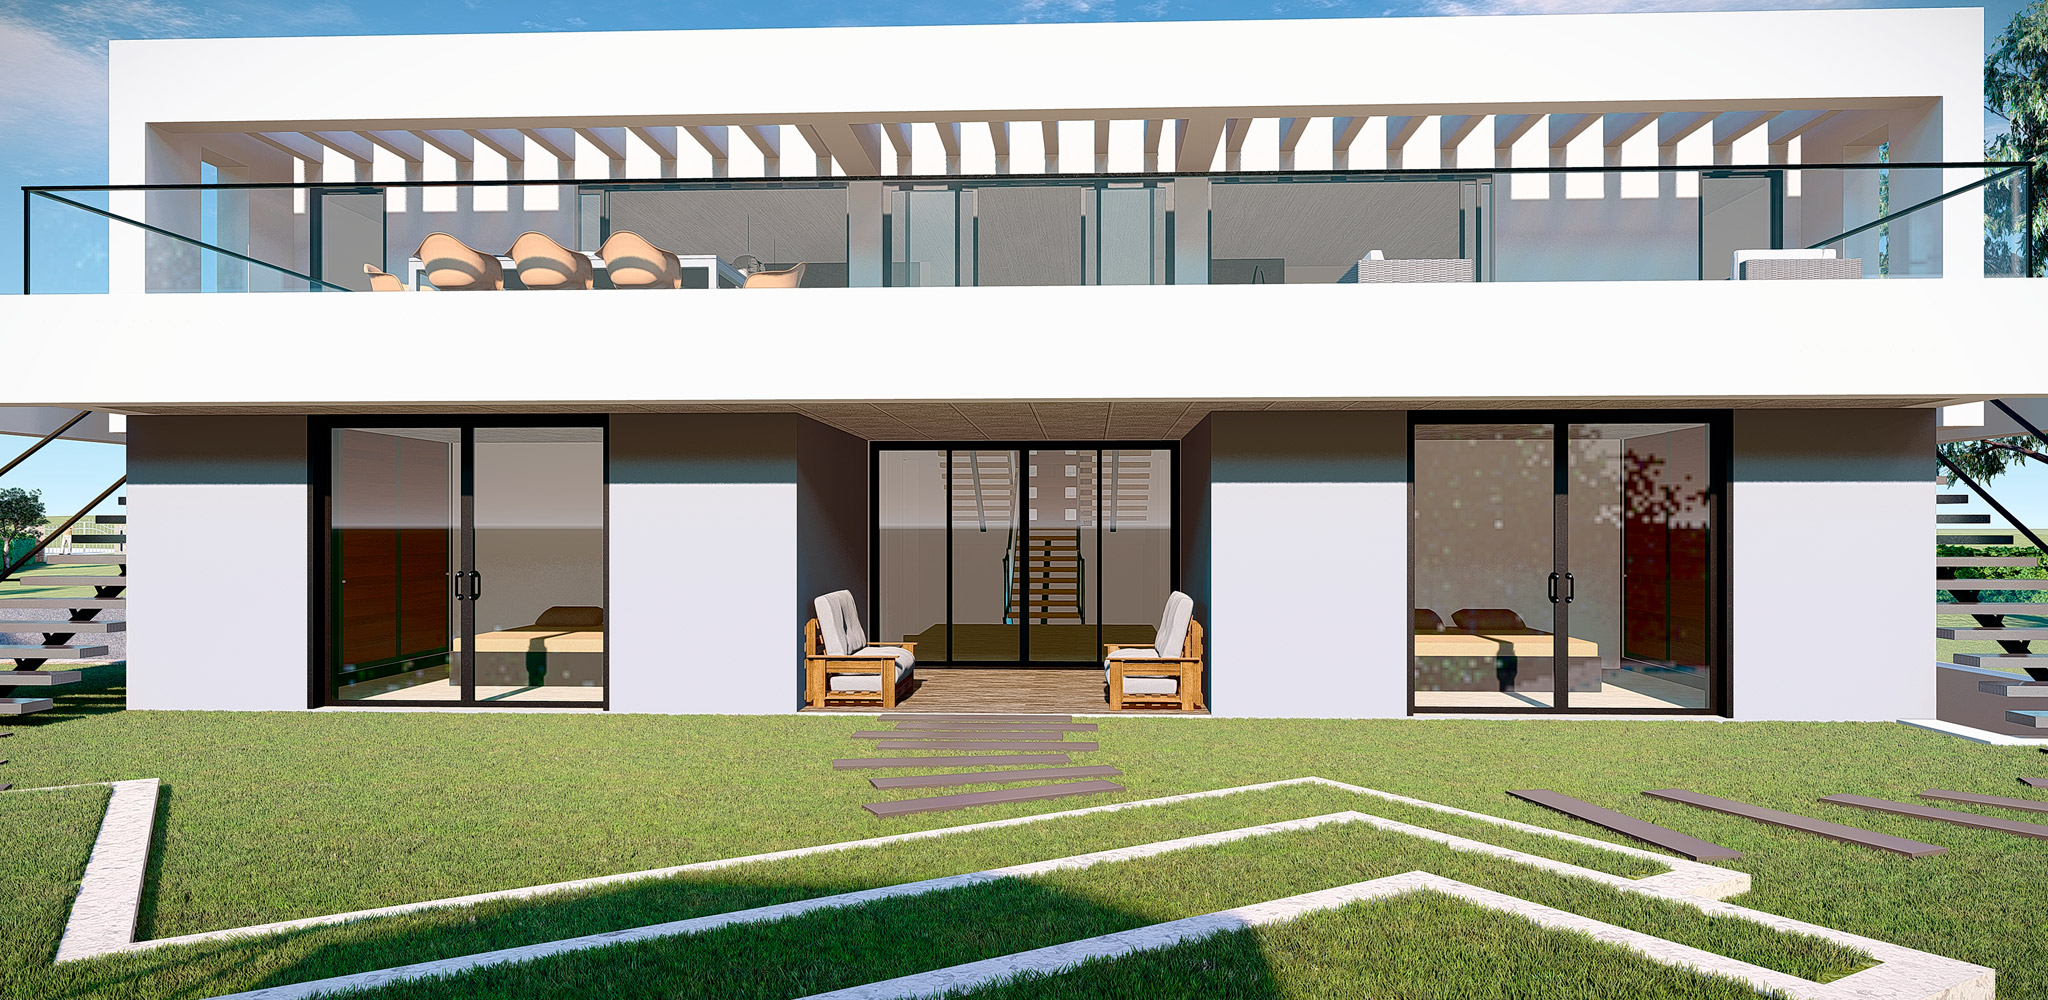 Casa Terraço by Bespoke Architects